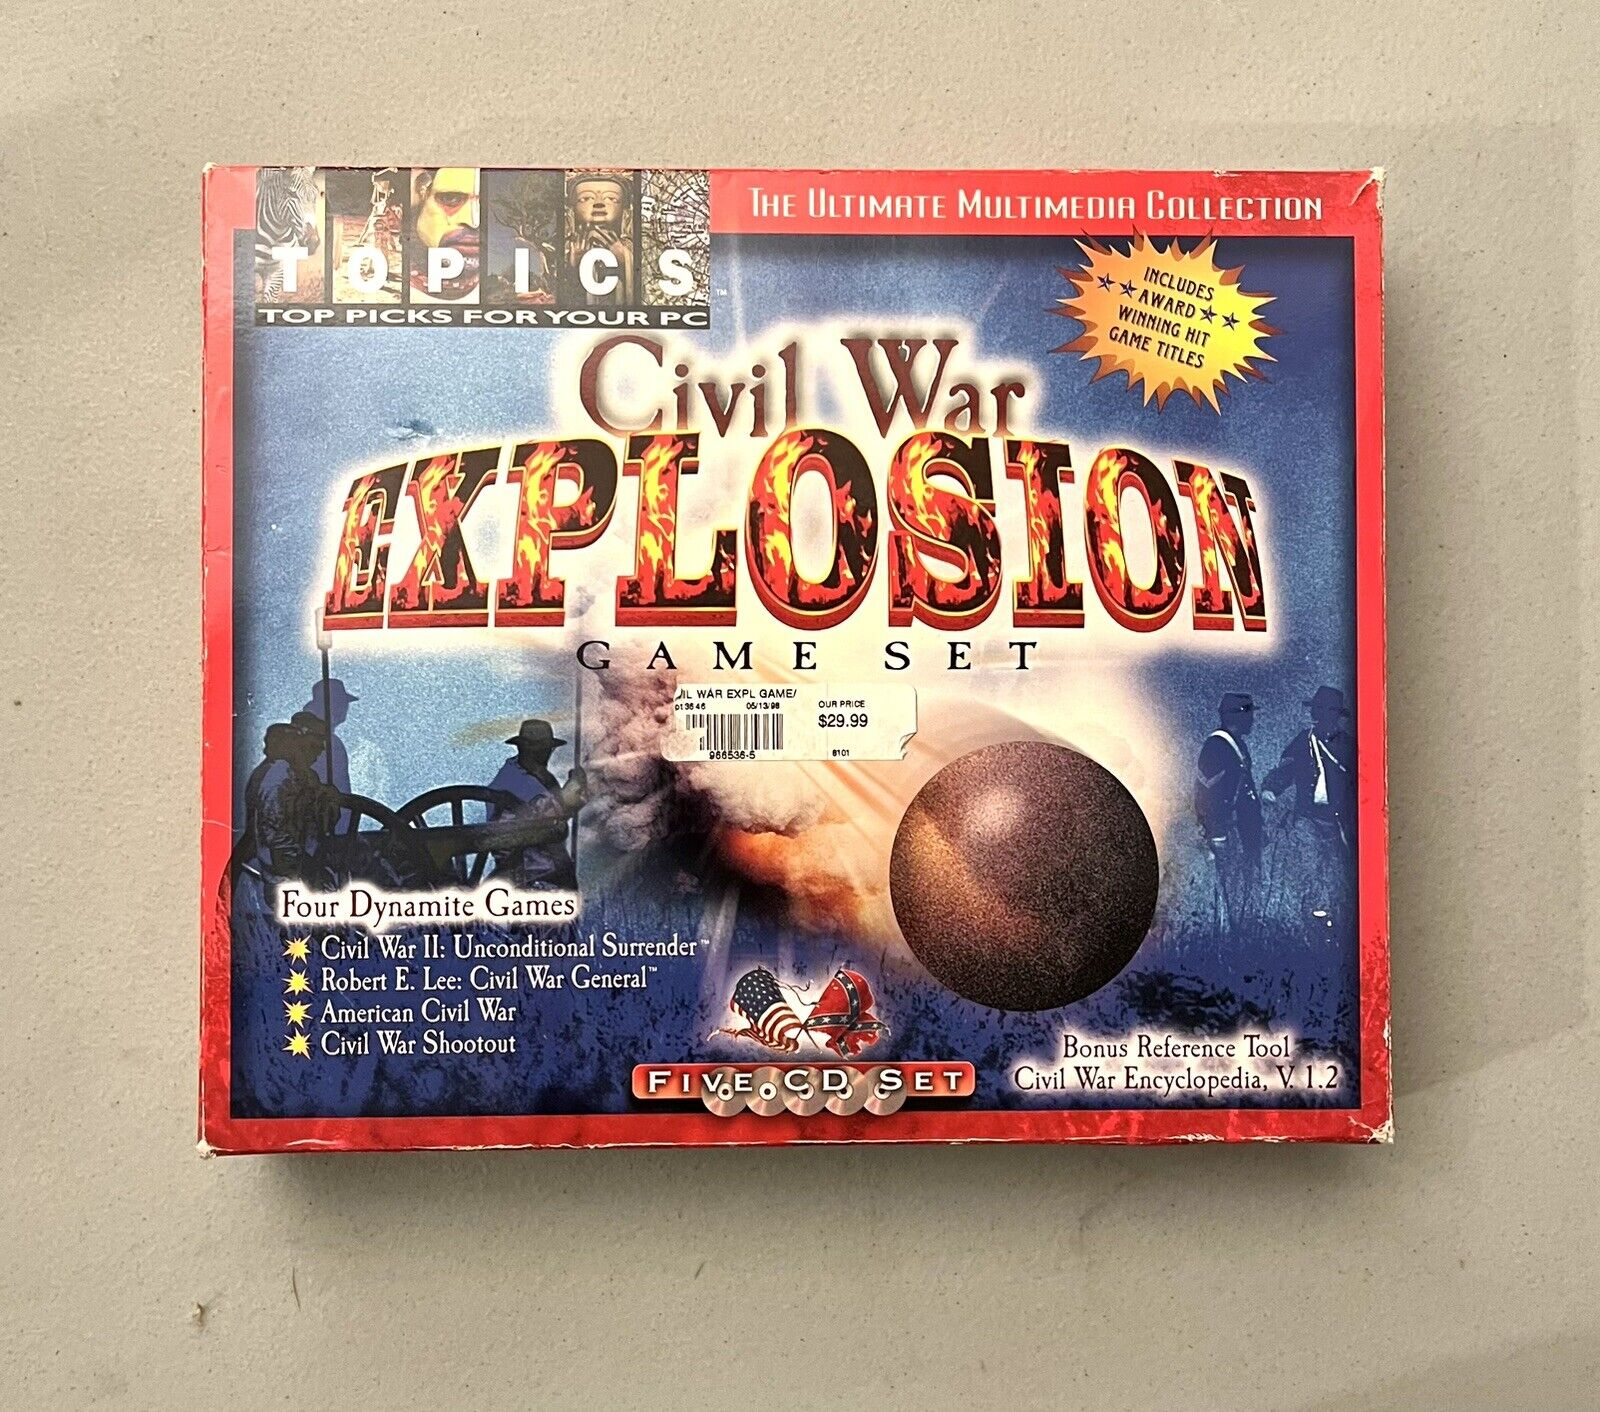 Civil War Explosion Game Set PC 5 CD Mega Set Complete